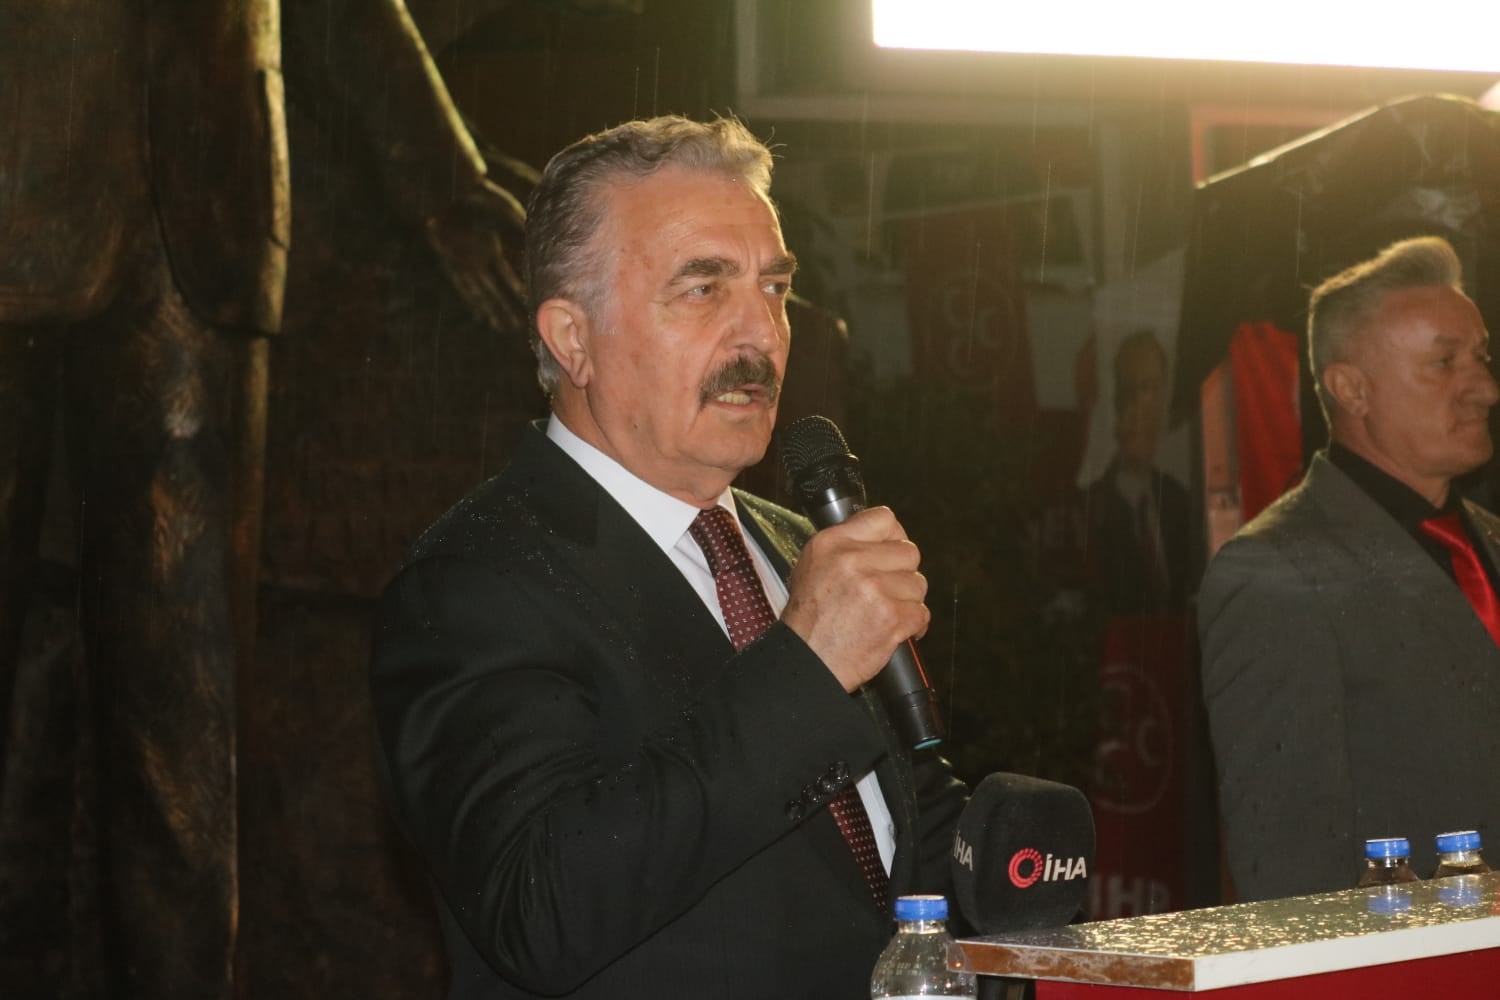 Mhp Genel Sekreteri Büyükataman Kılıçdaroğluna Seslendi: “Açıklamak Mecburiyeti Var”